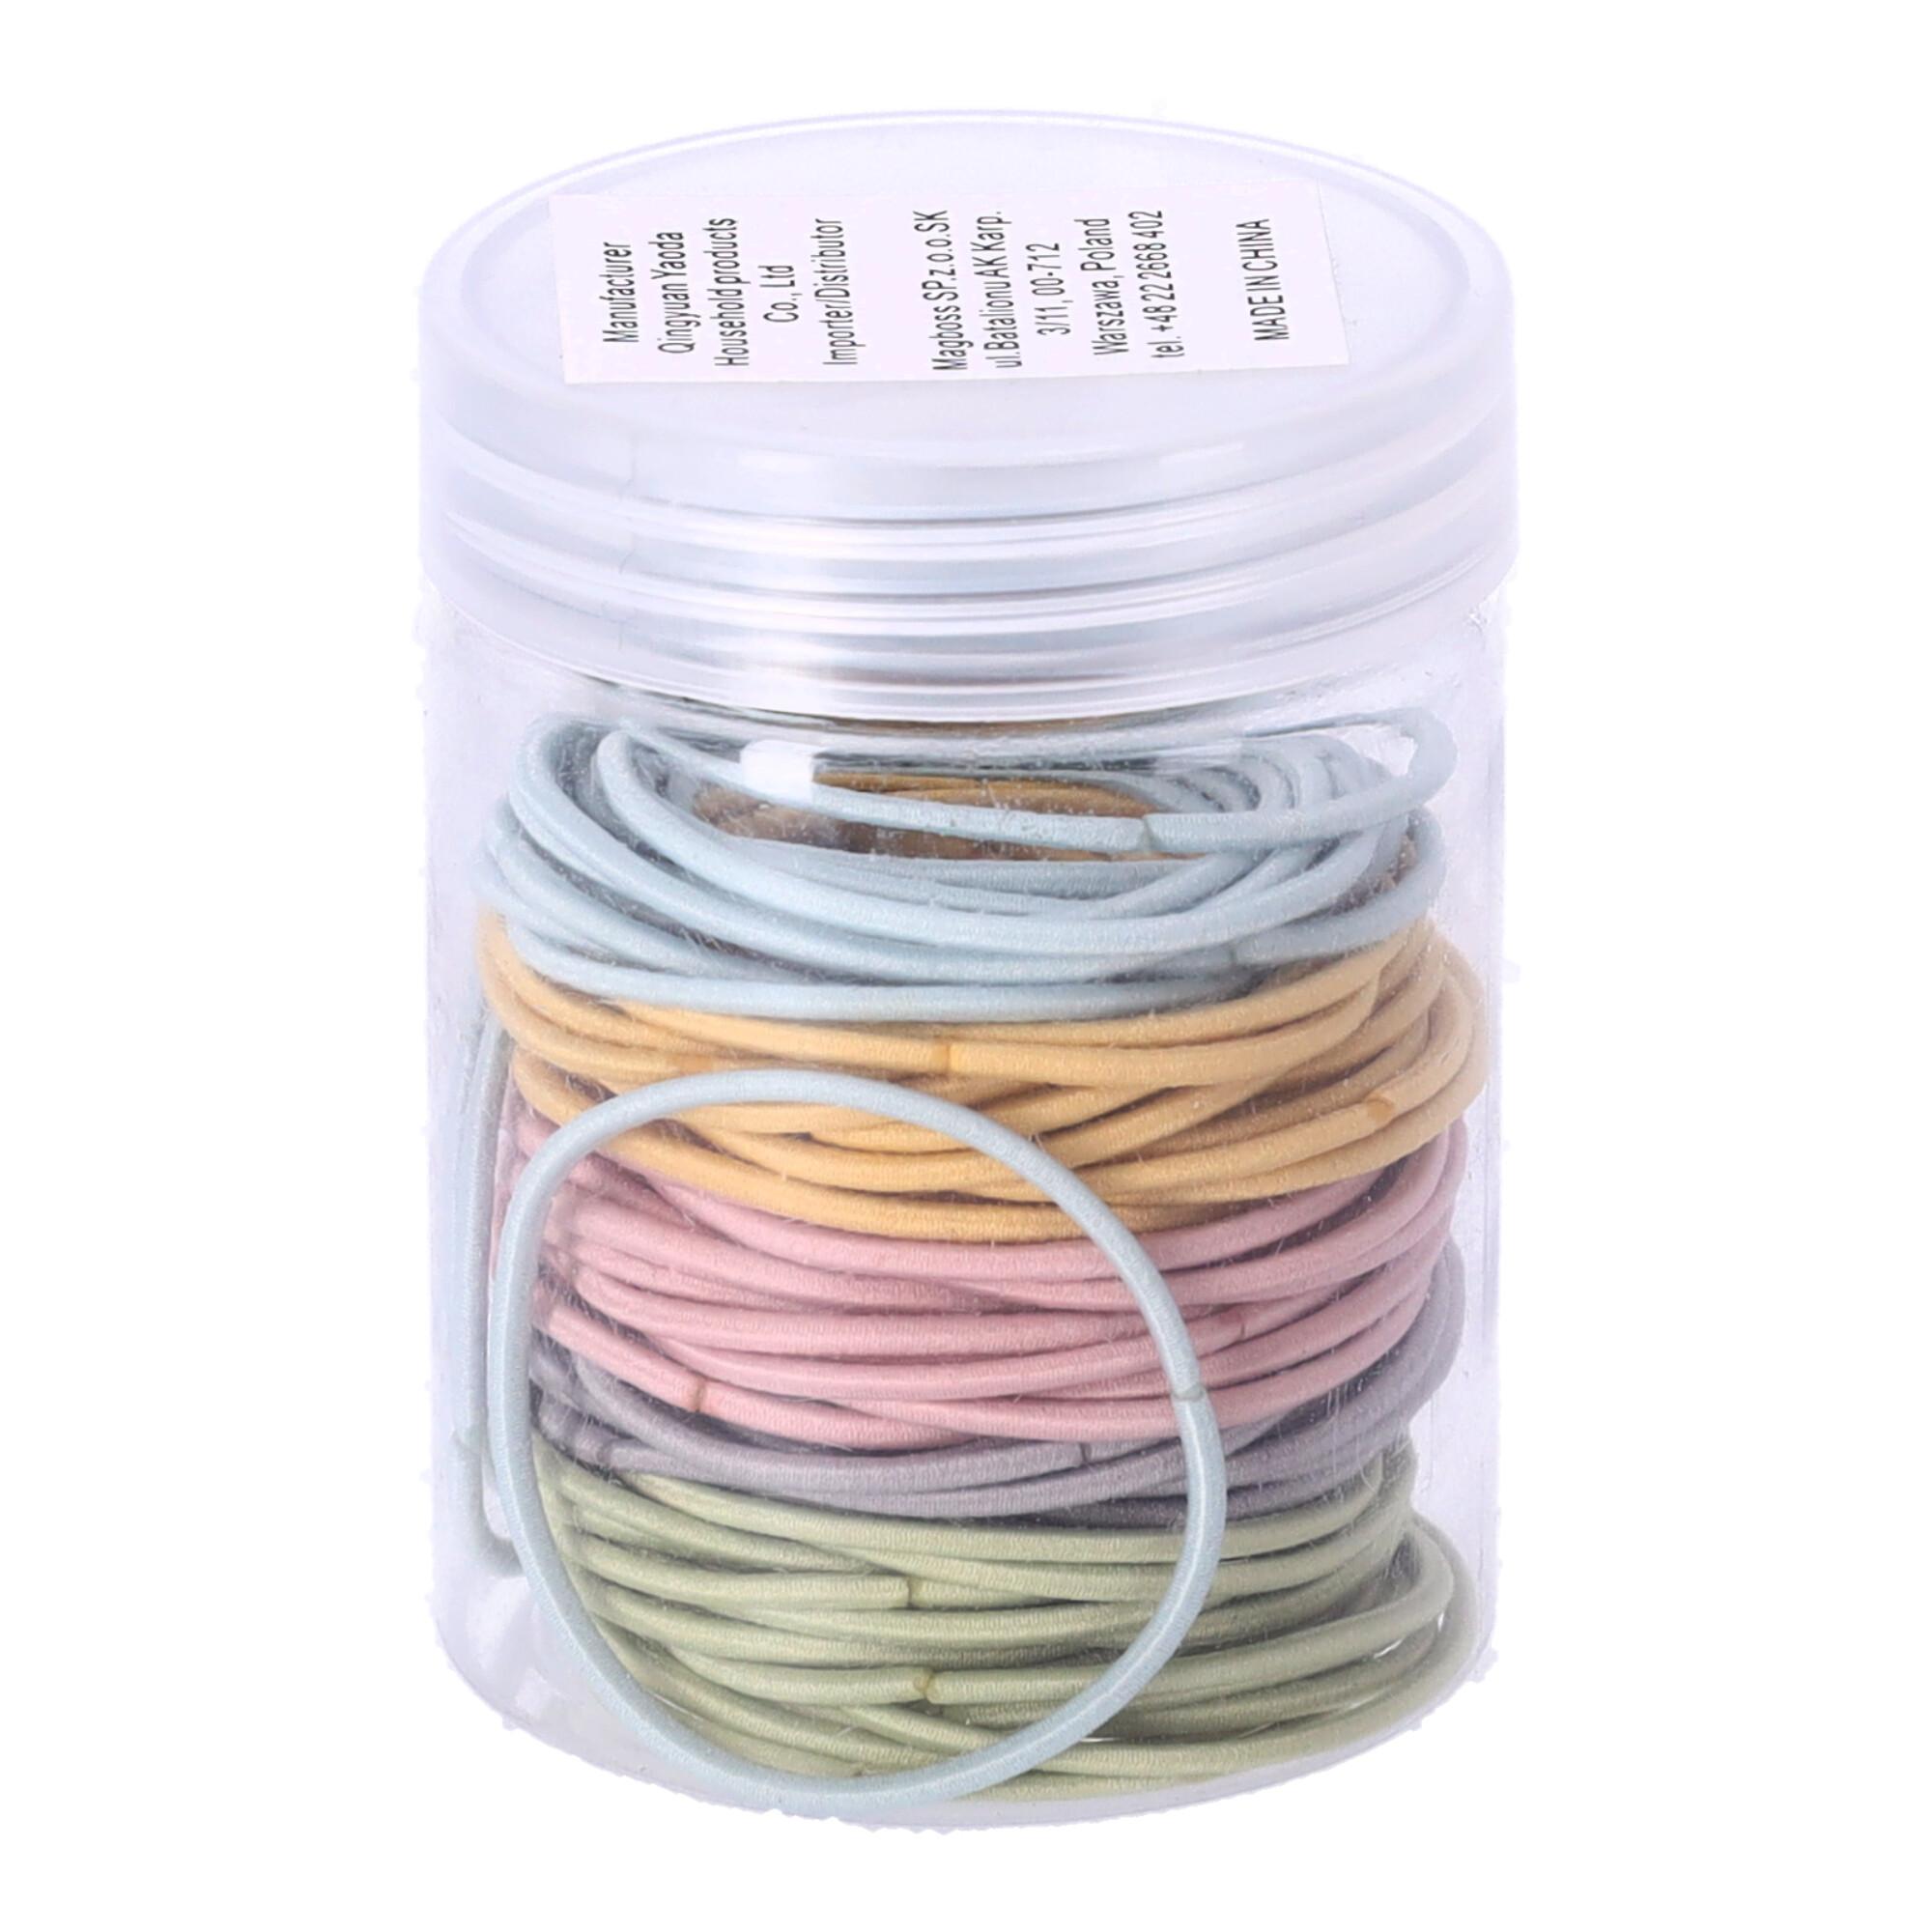 A set of hair elastics - mix of colors